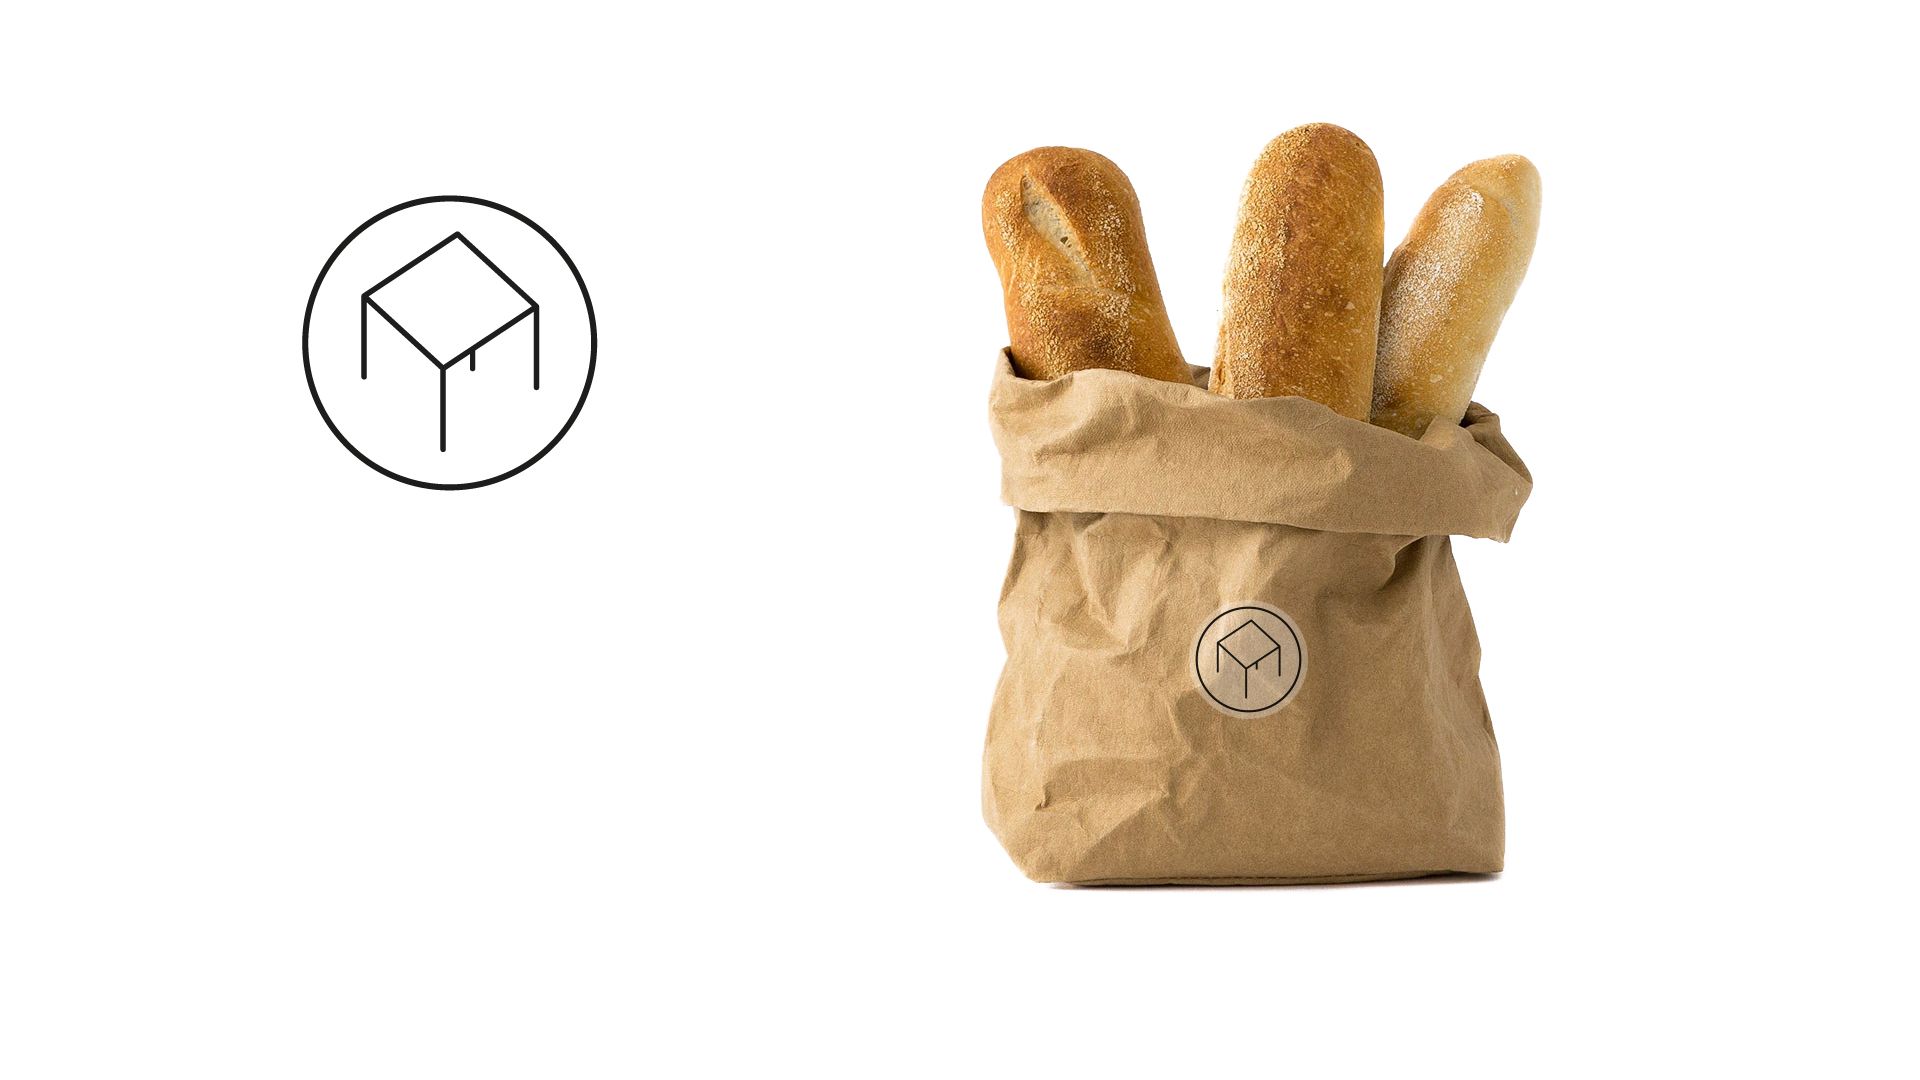 Personalizzazione dei sacchetti per il pane con rappresentazione del logo